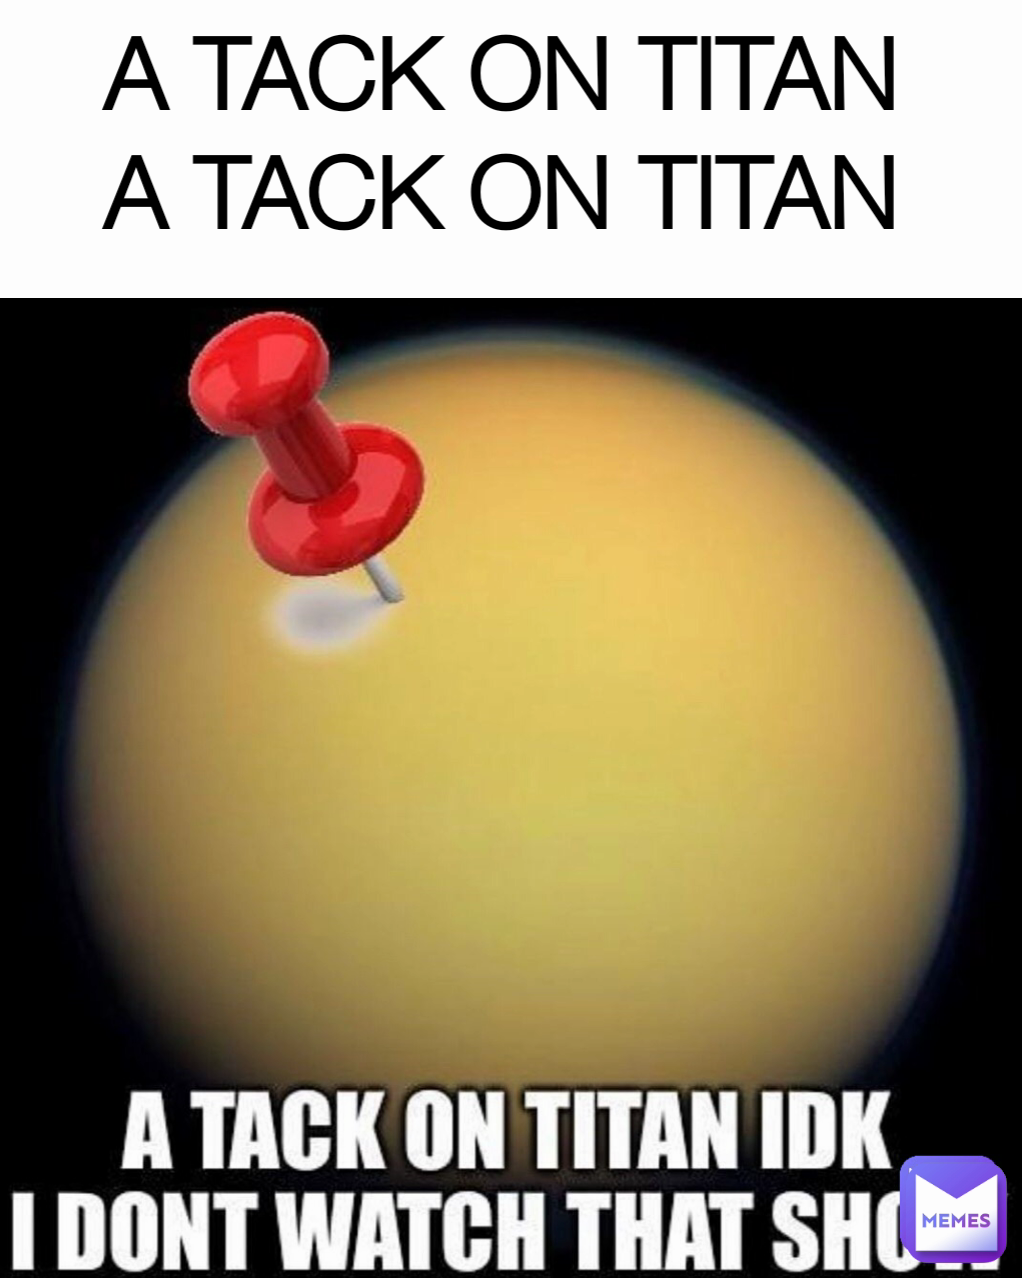 A TACK ON TITAN
A TACK ON TITAN